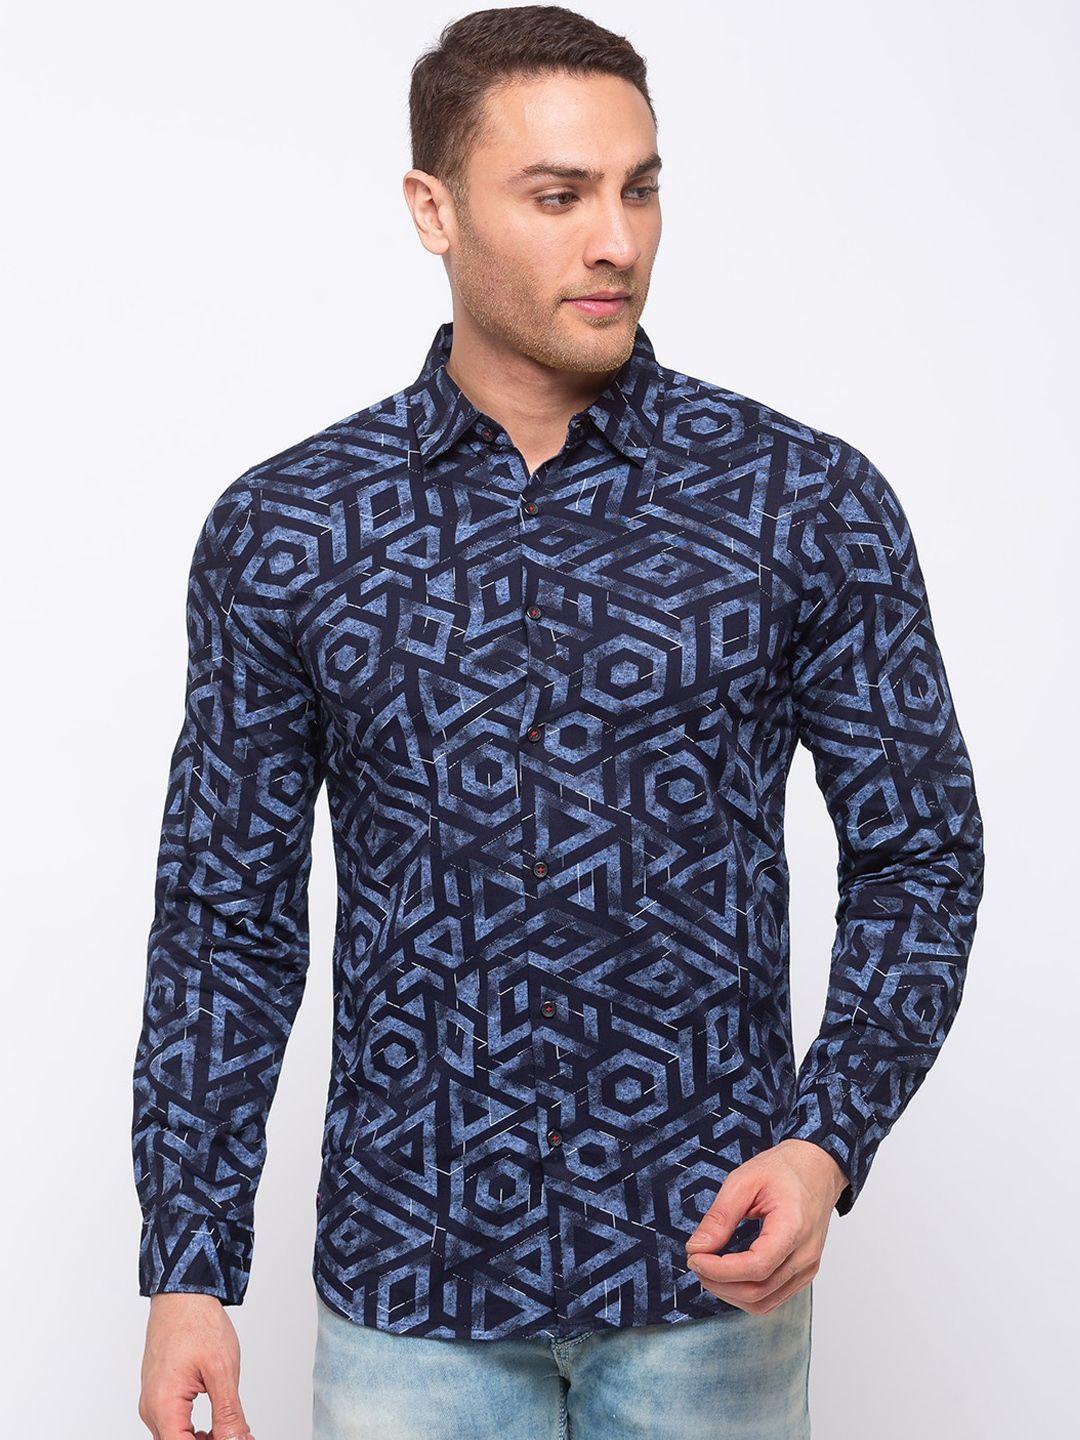 status quo men navy blue slim fit printed casual shirt